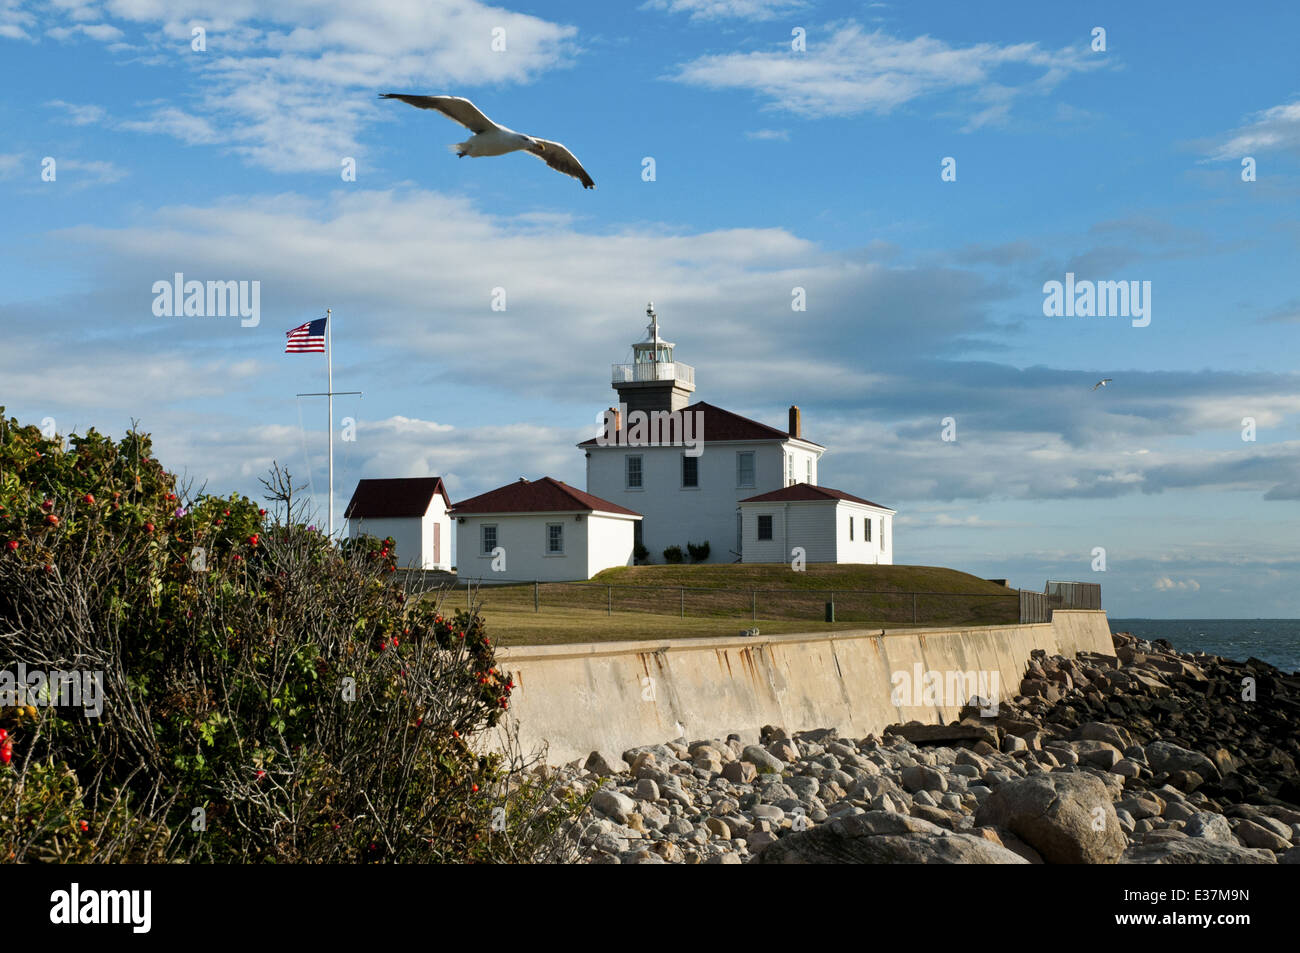 Seagull vola sopra Watch Hill lighthouse in una calda giornata estiva lungo il Rhode Island il litorale roccioso. Il faro rotante è protetta da un seawall dalle tempeste. Foto Stock